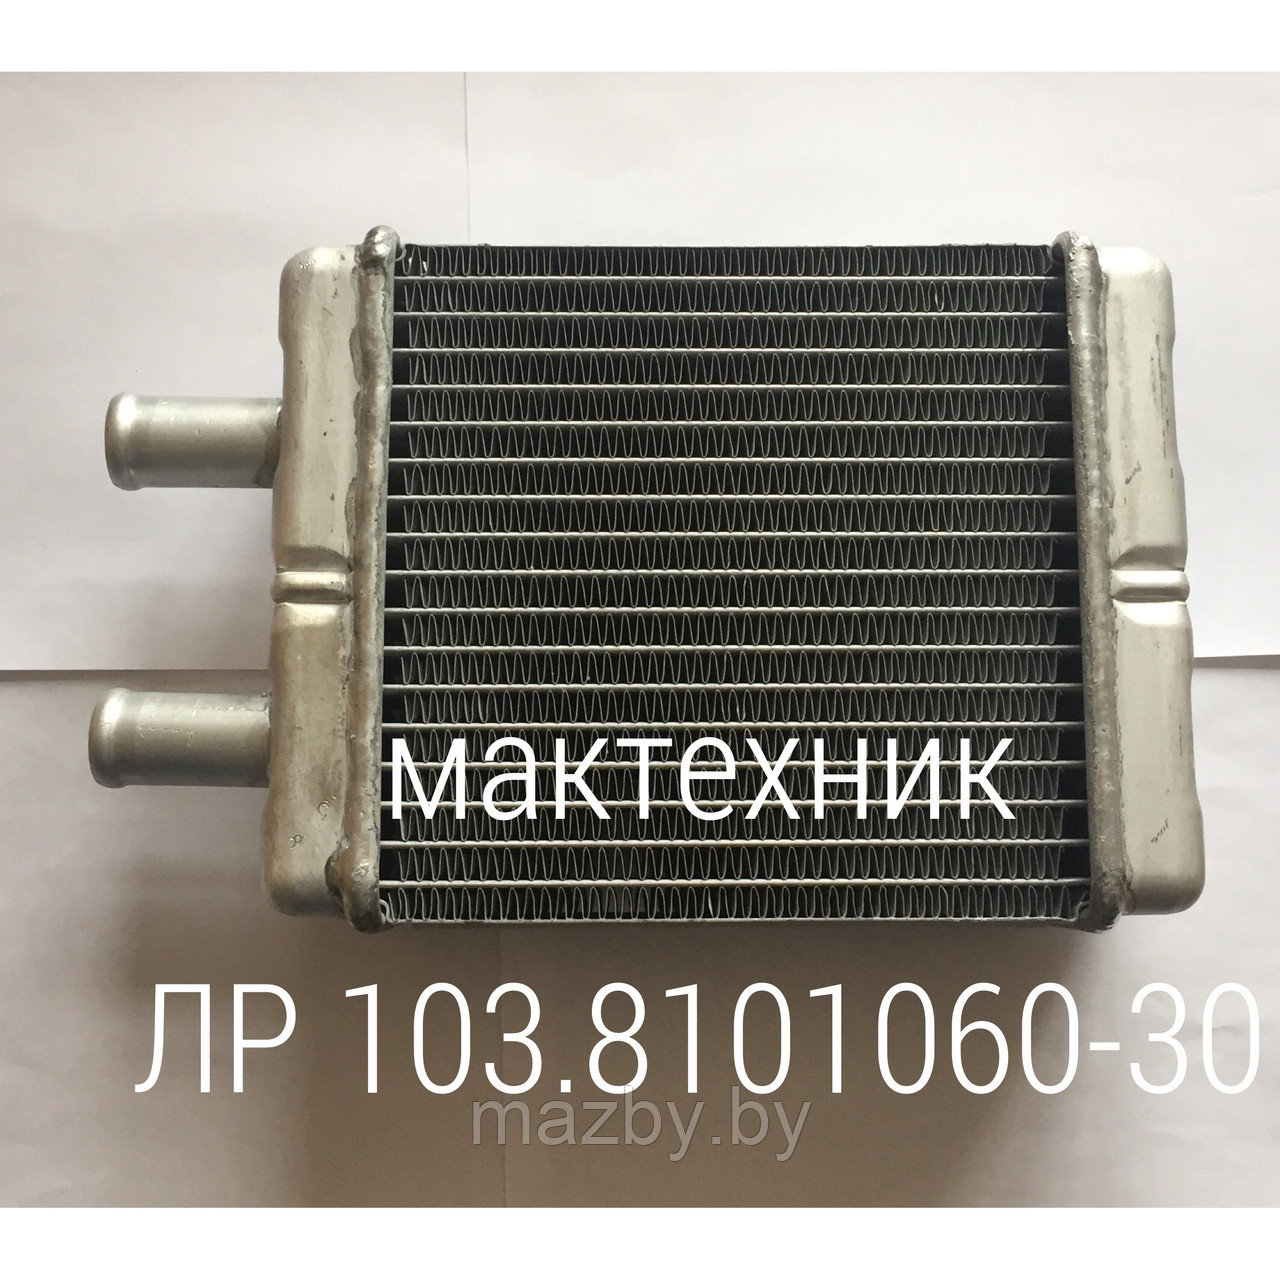 103-8101060 радиатор отопителя автобус МАЗ ( 103-8101060-30 )